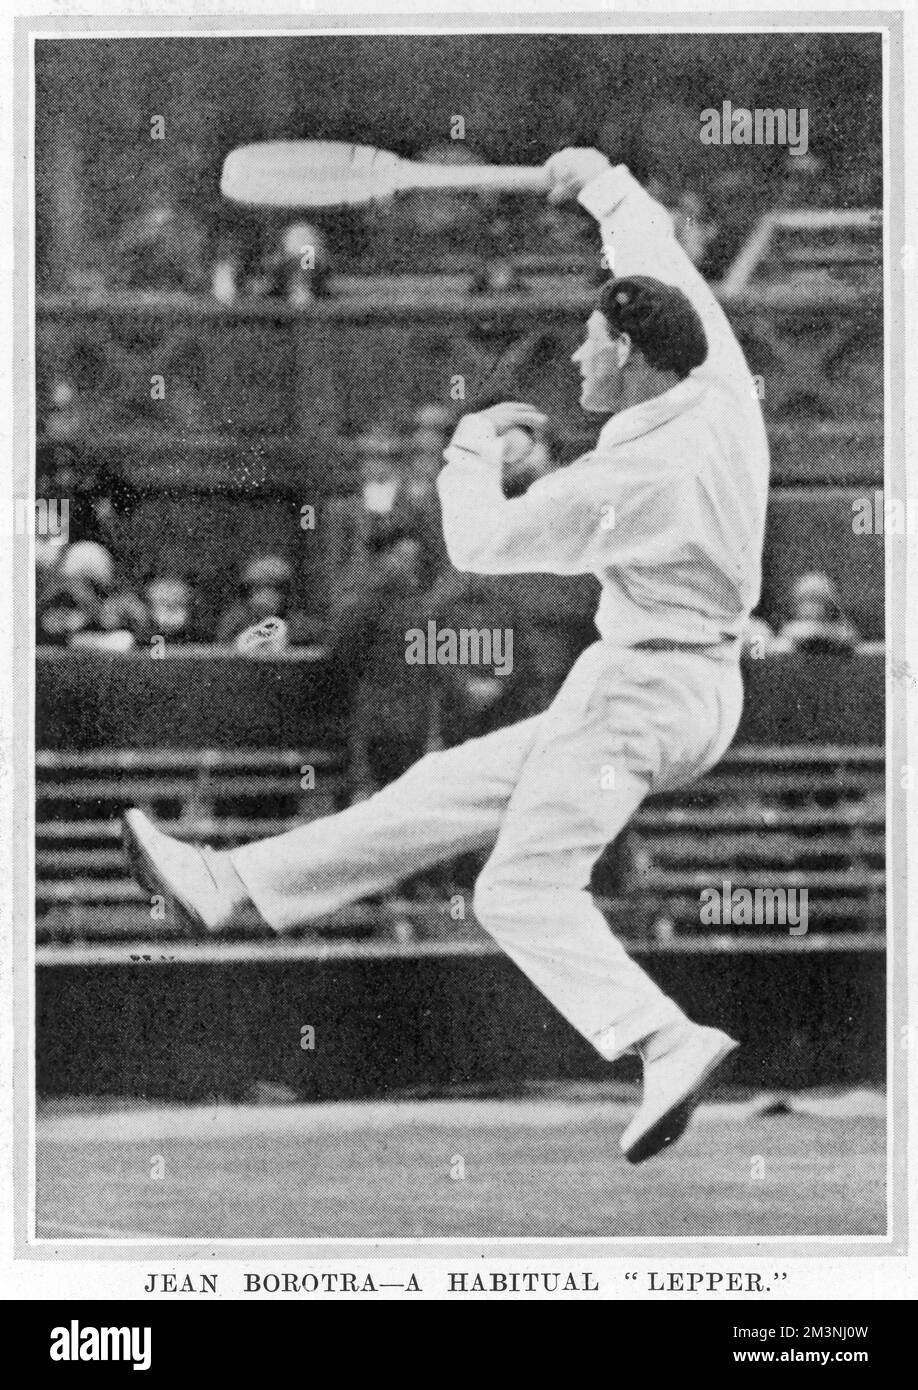 Jean Borotra (1898 - 1994), joueur de tennis français connu sous le nom de 'Basque Limitrophes), photographié à Wimbledon en action et portant son béret caractéristique. Date: 1925 Banque D'Images